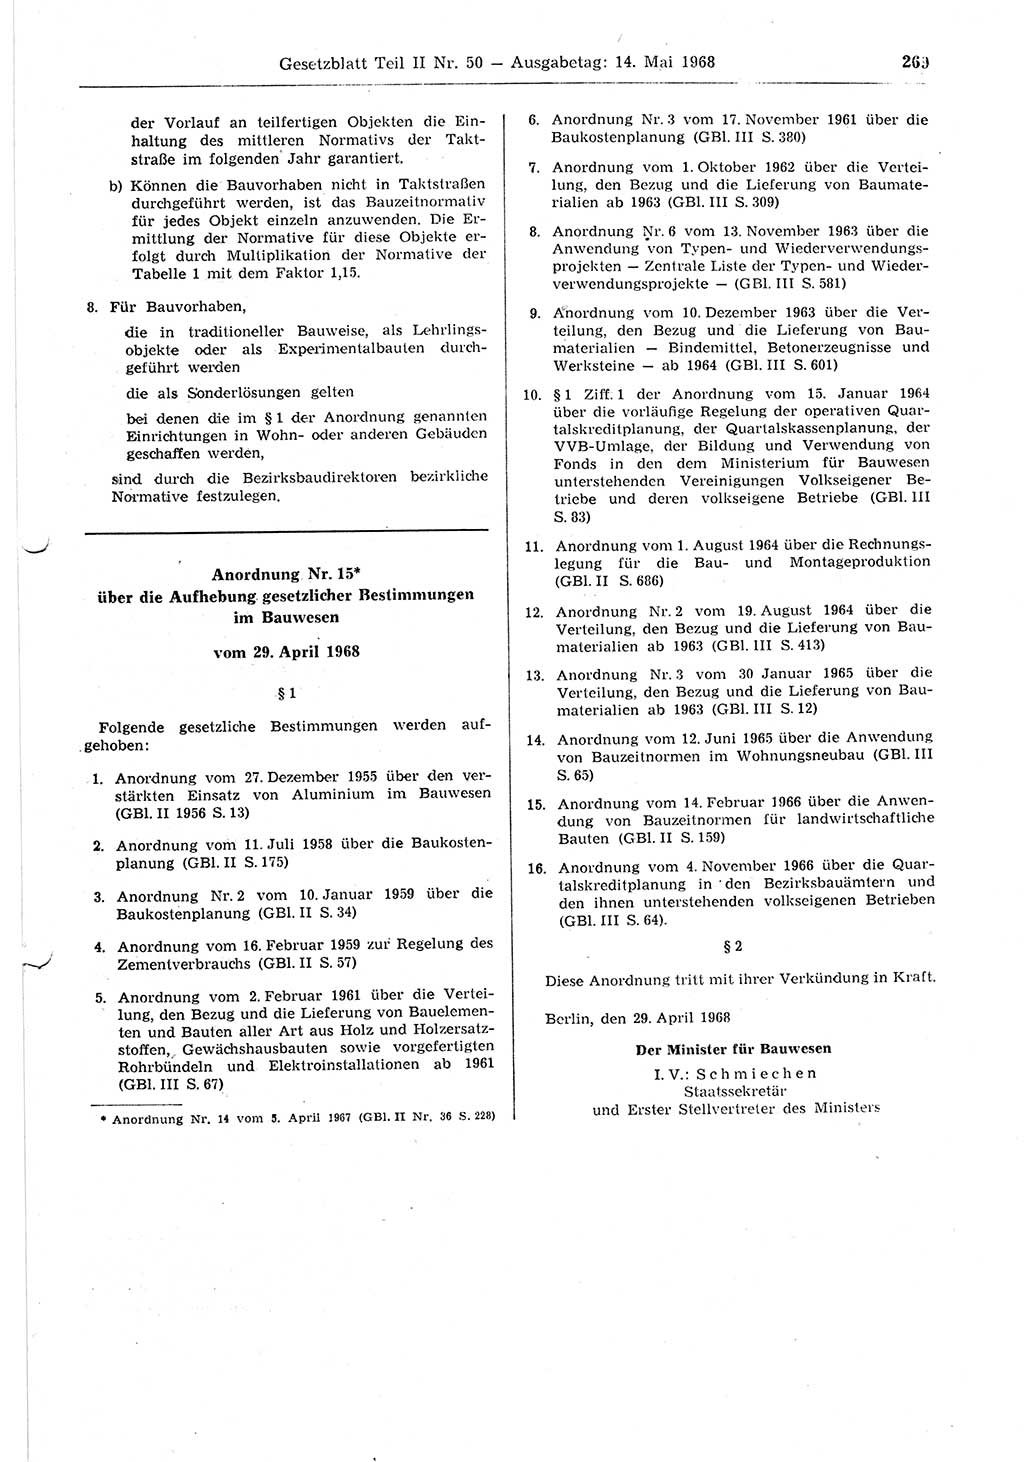 Gesetzblatt (GBl.) der Deutschen Demokratischen Republik (DDR) Teil ⅠⅠ 1968, Seite 269 (GBl. DDR ⅠⅠ 1968, S. 269)